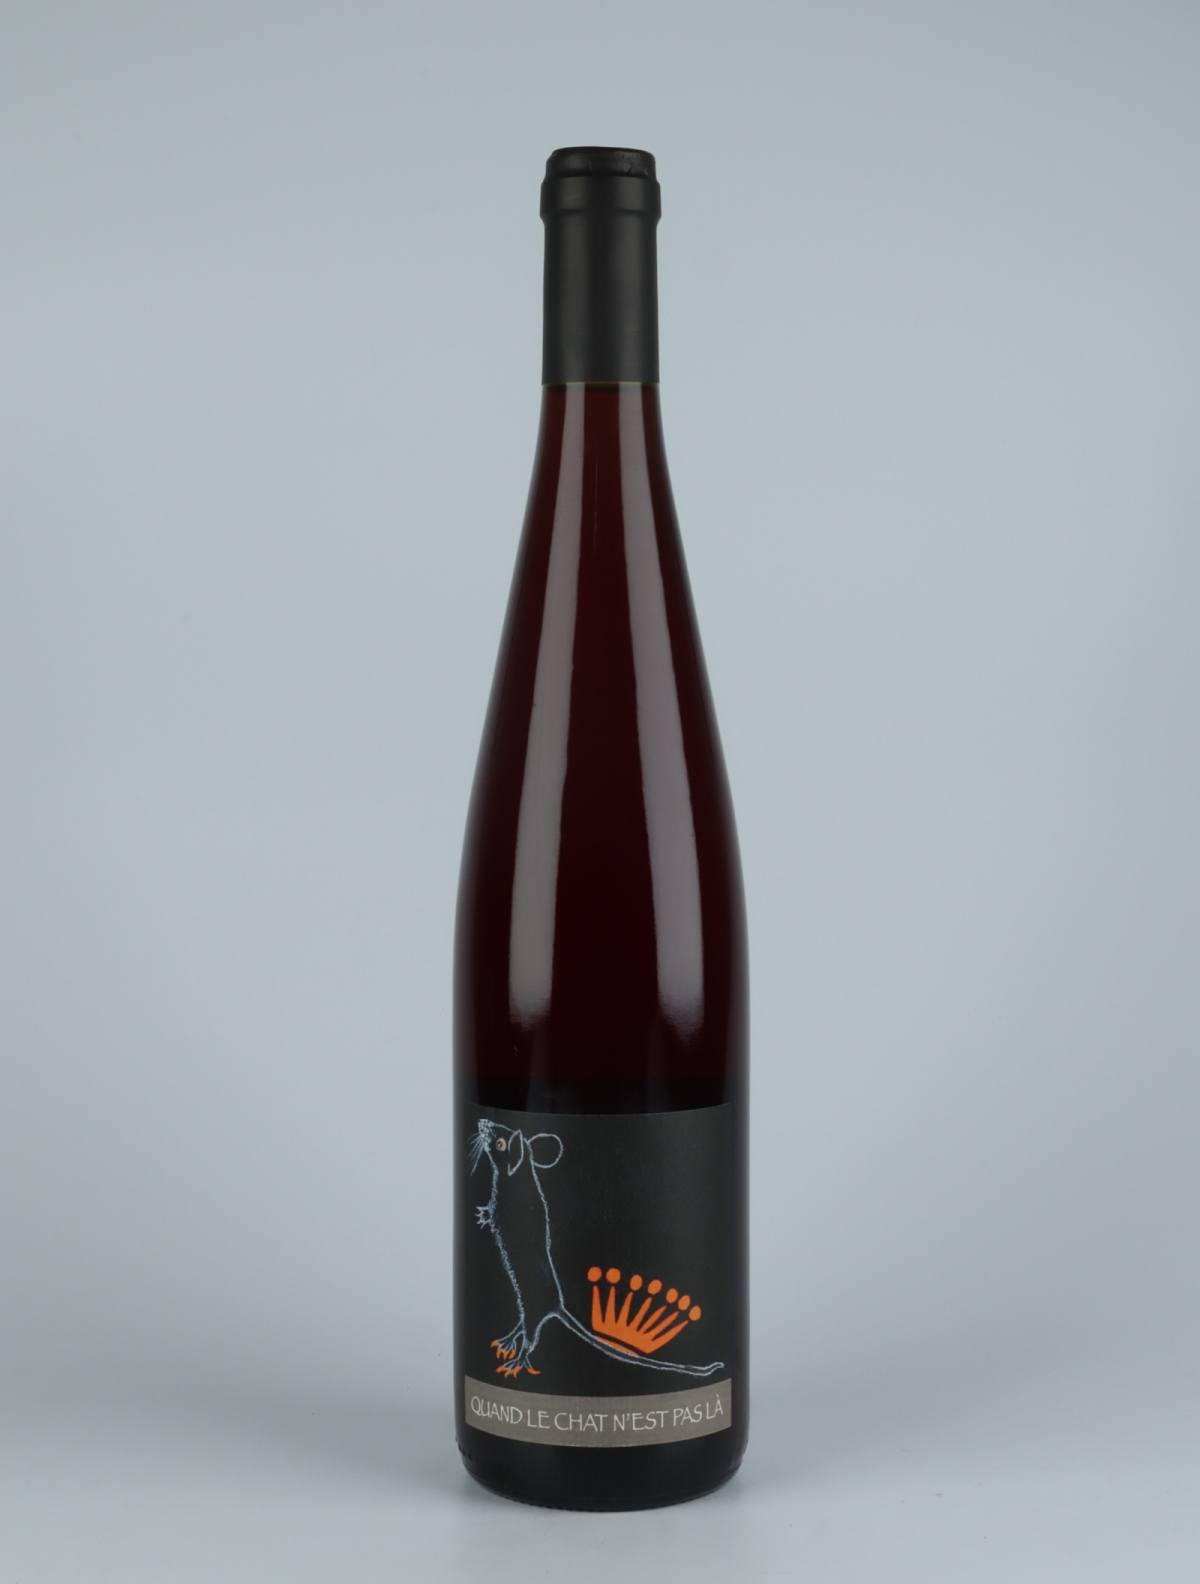 En flaske 2020 Quand le Chat n'est pas la Orange vin fra Domaine Rietsch, Alsace i Frankrig